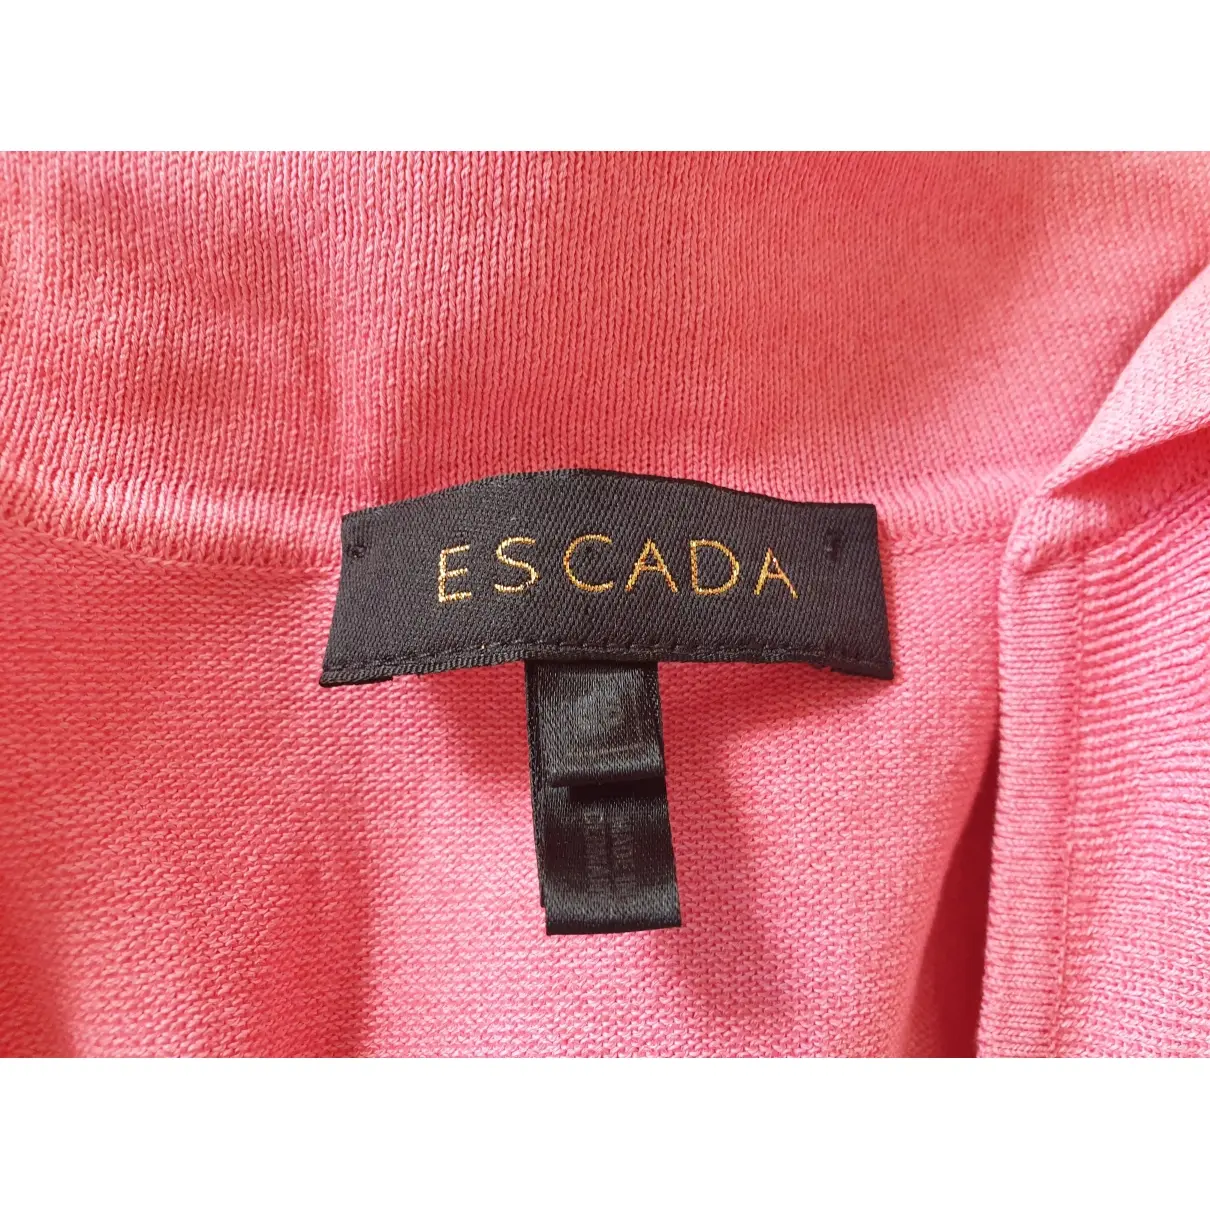 Buy Escada Jersey top online